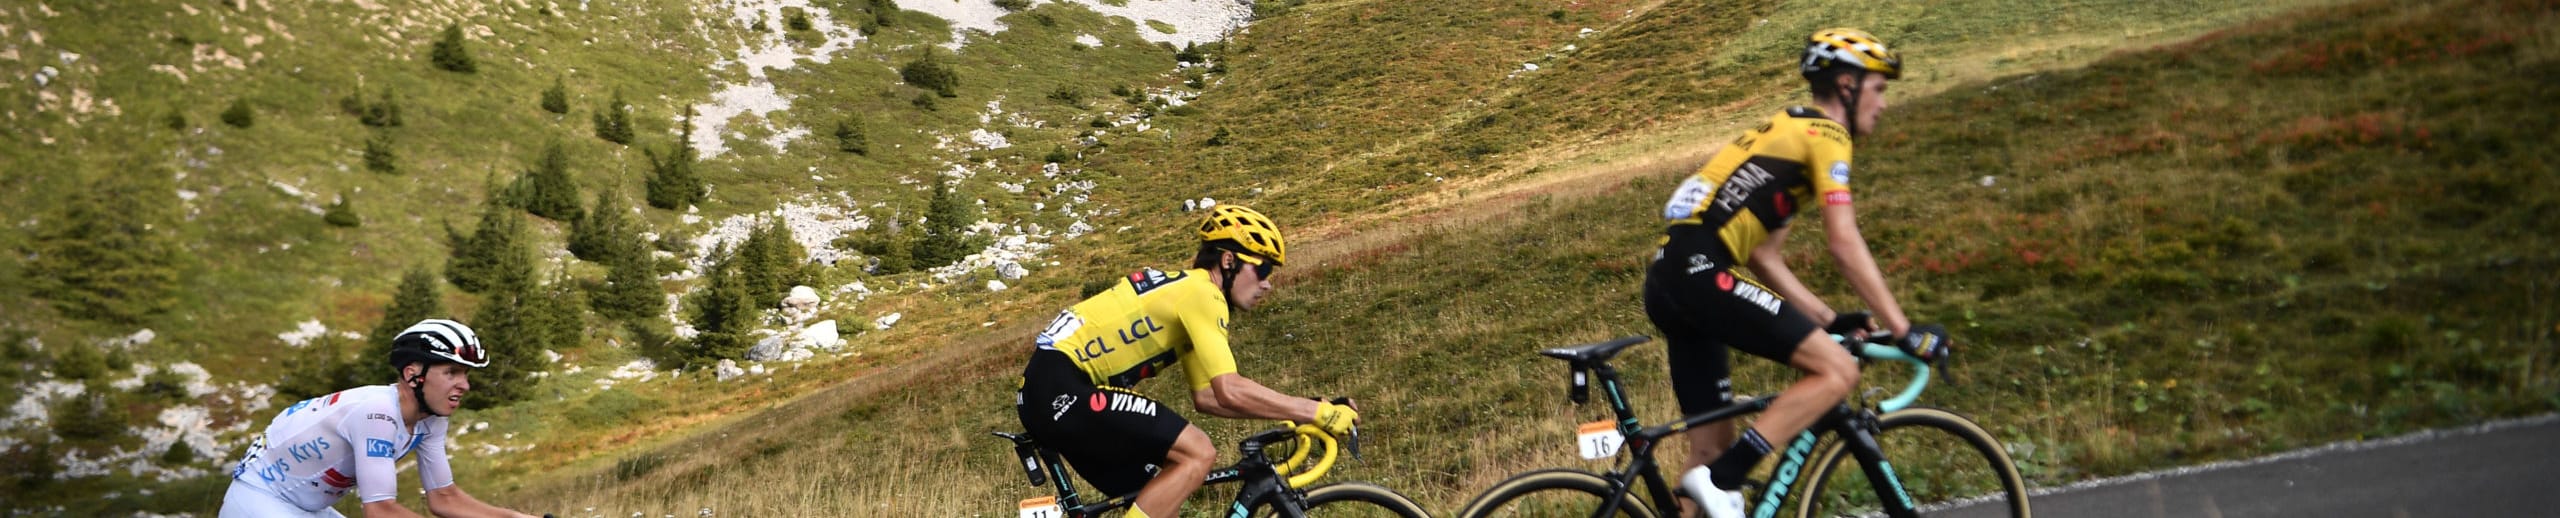 Tour de France 2020, quote e favoriti per la tappa 18: Pogacar si gioca tutto